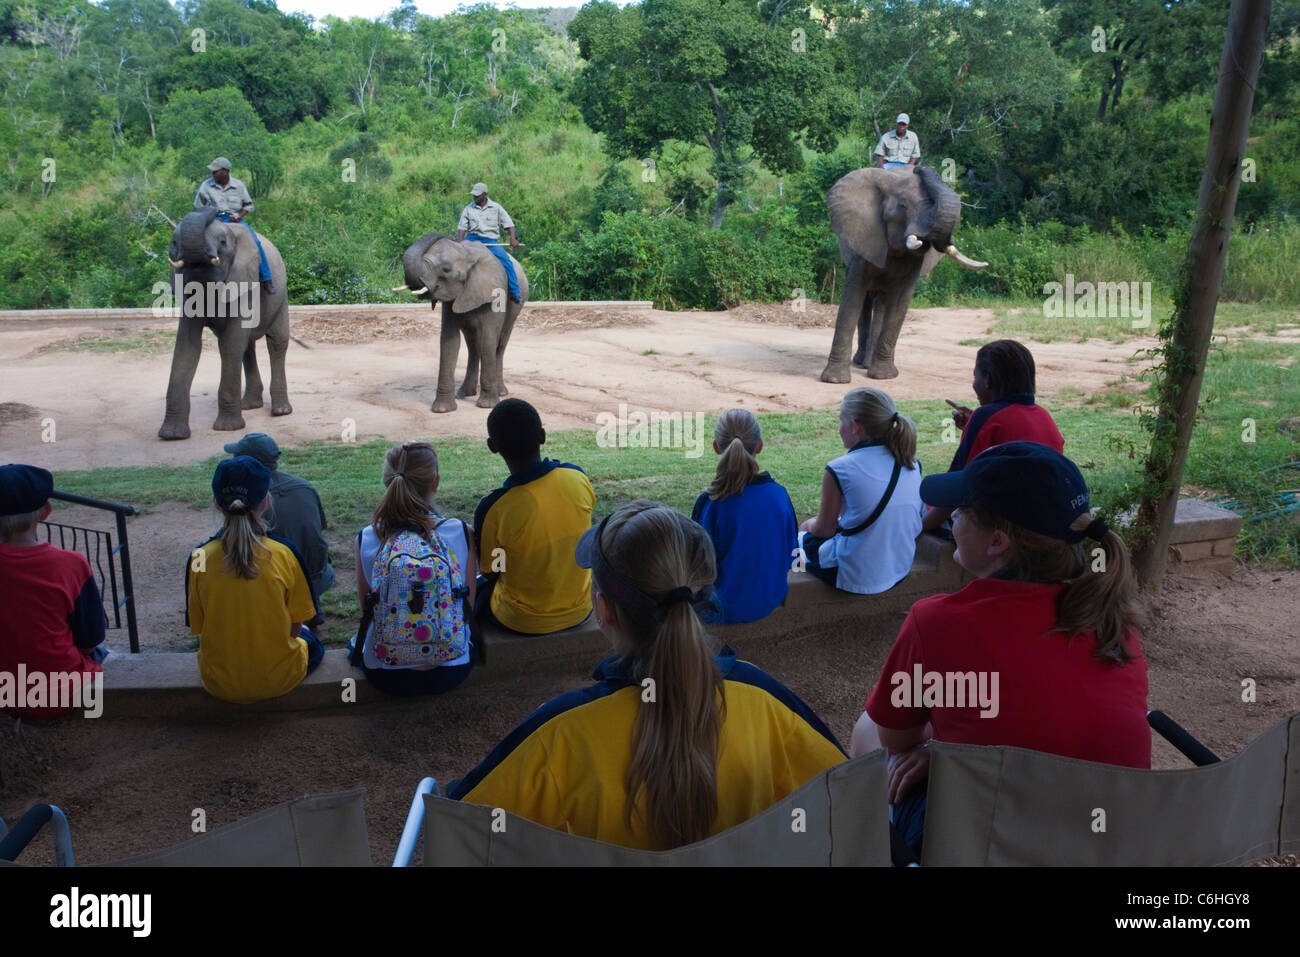 Bambini in gita scolastica a Elephant sussurra - Abituare gli elefanti salvato da pianificate operazioni di abbattimento Foto Stock